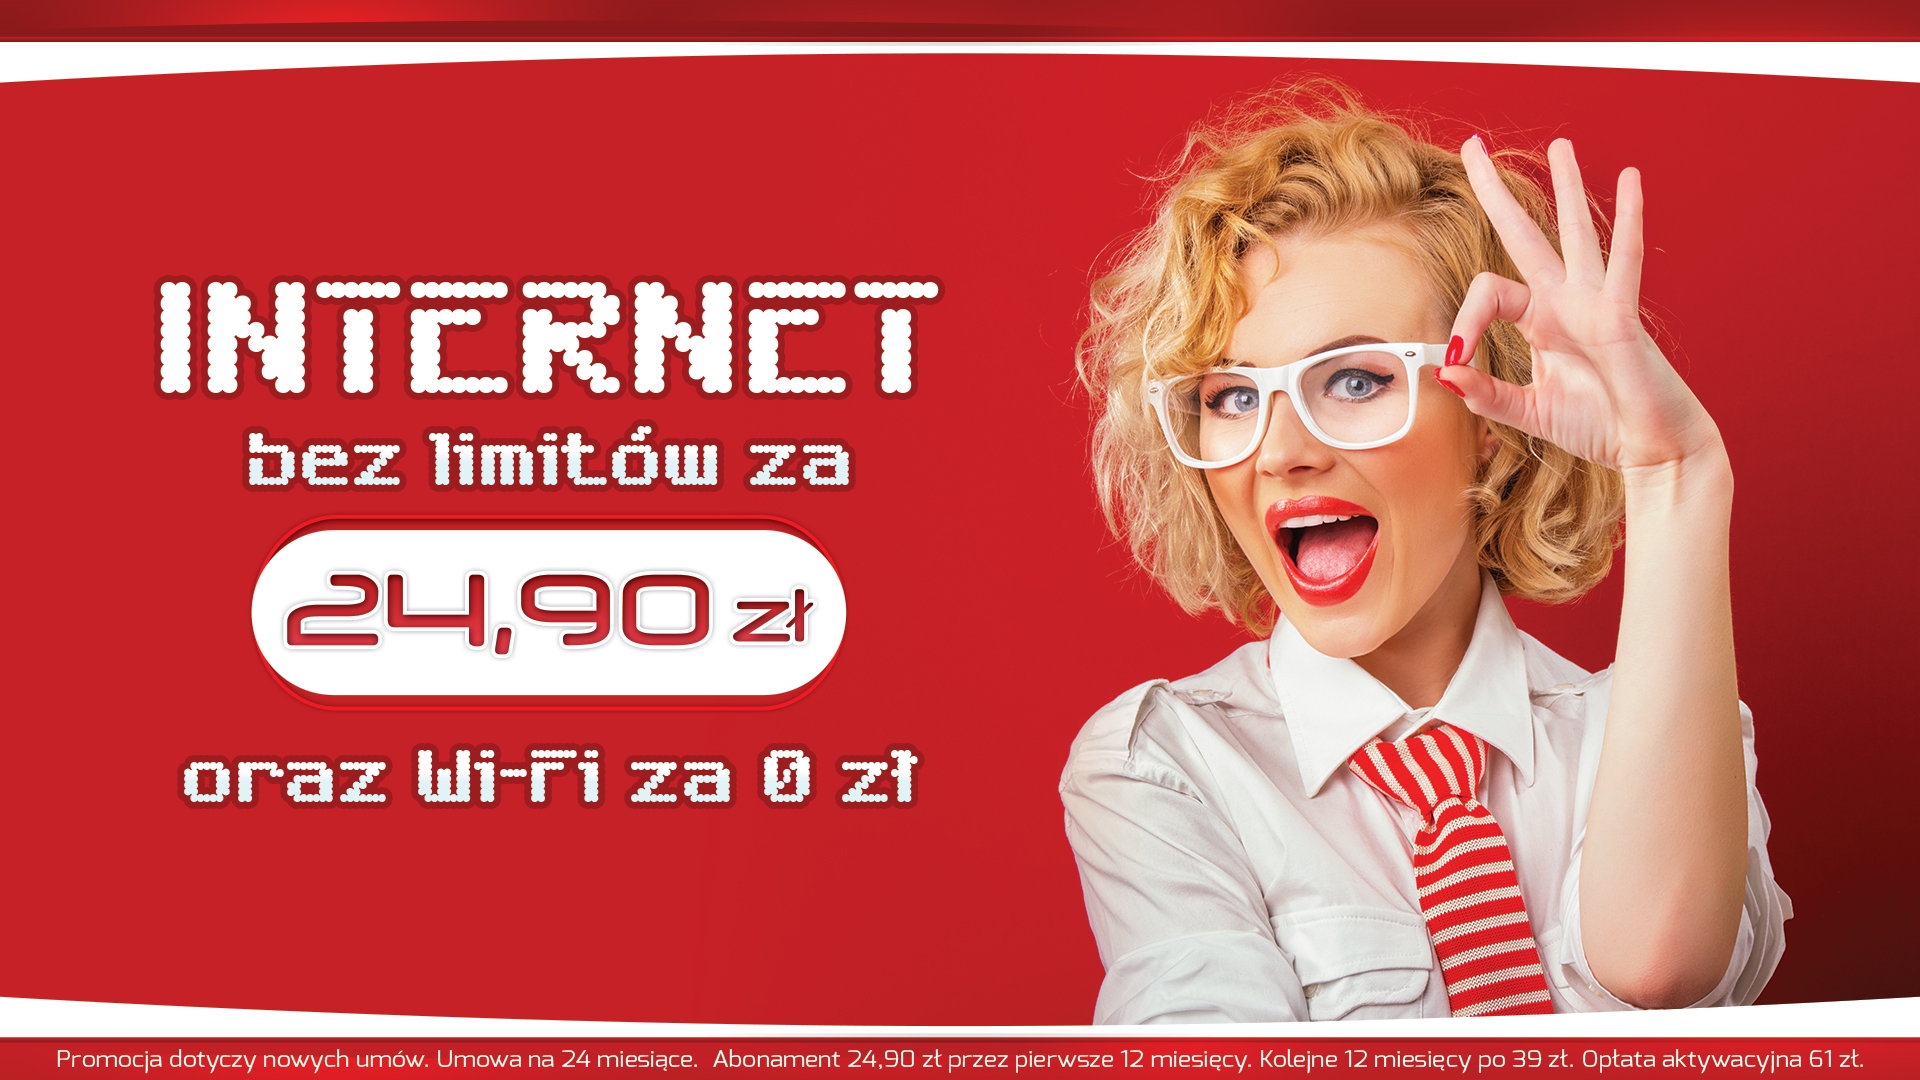 NETbis - Internet bez limitów. Wykonanie reklam VORENUS Agencja Interaktywna. vorenus.pl